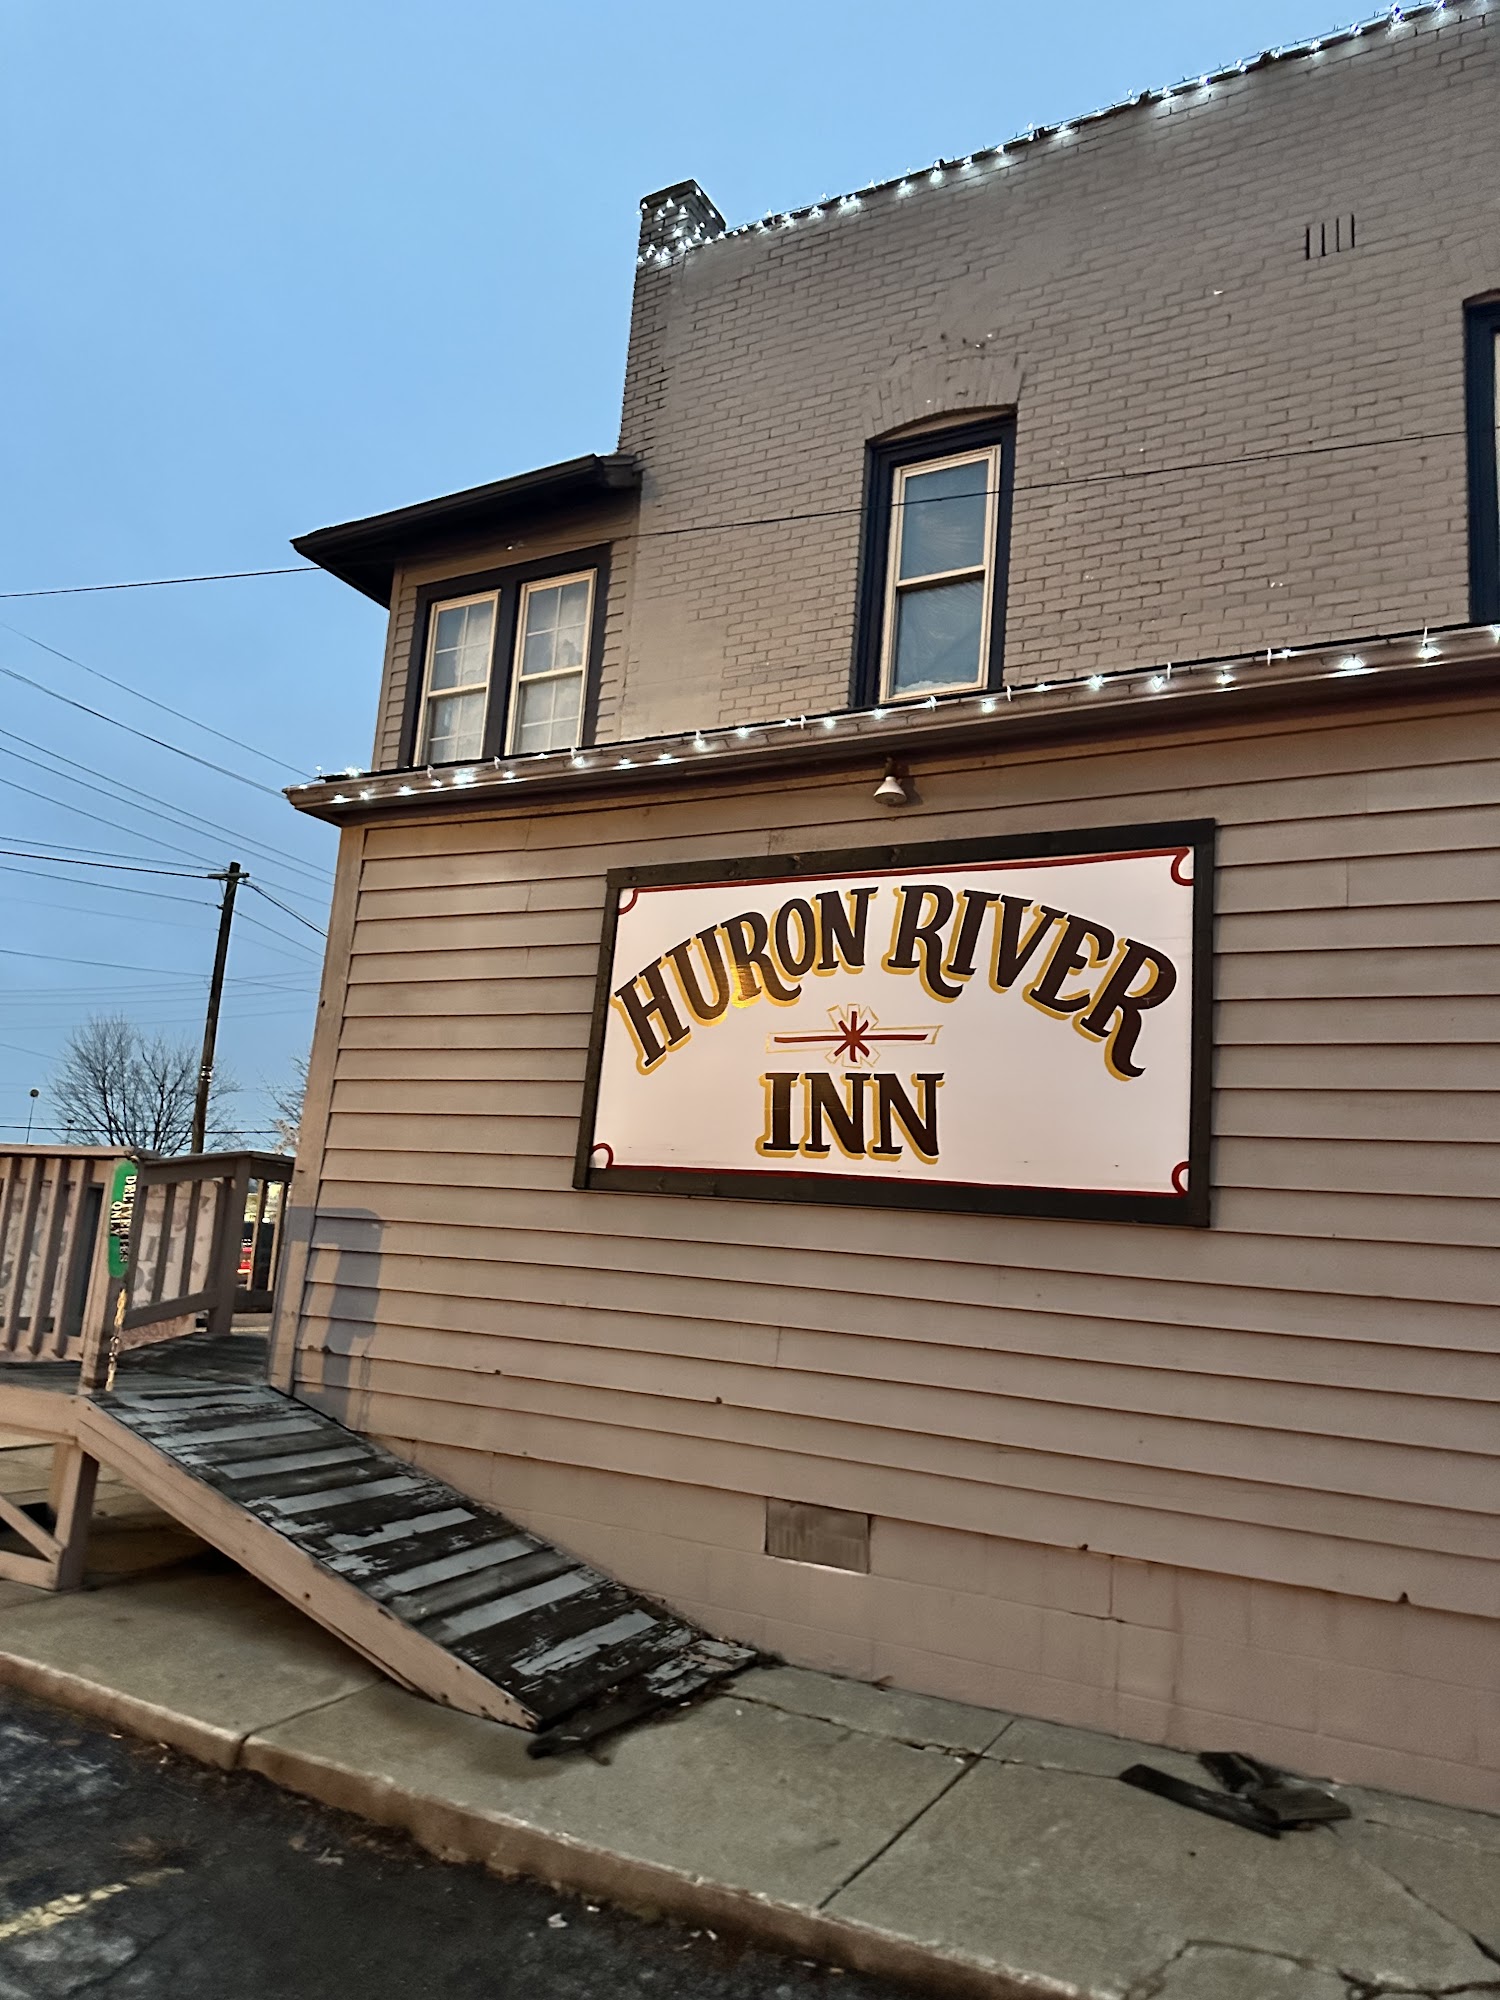 Huron River Inn Bar-B-Q